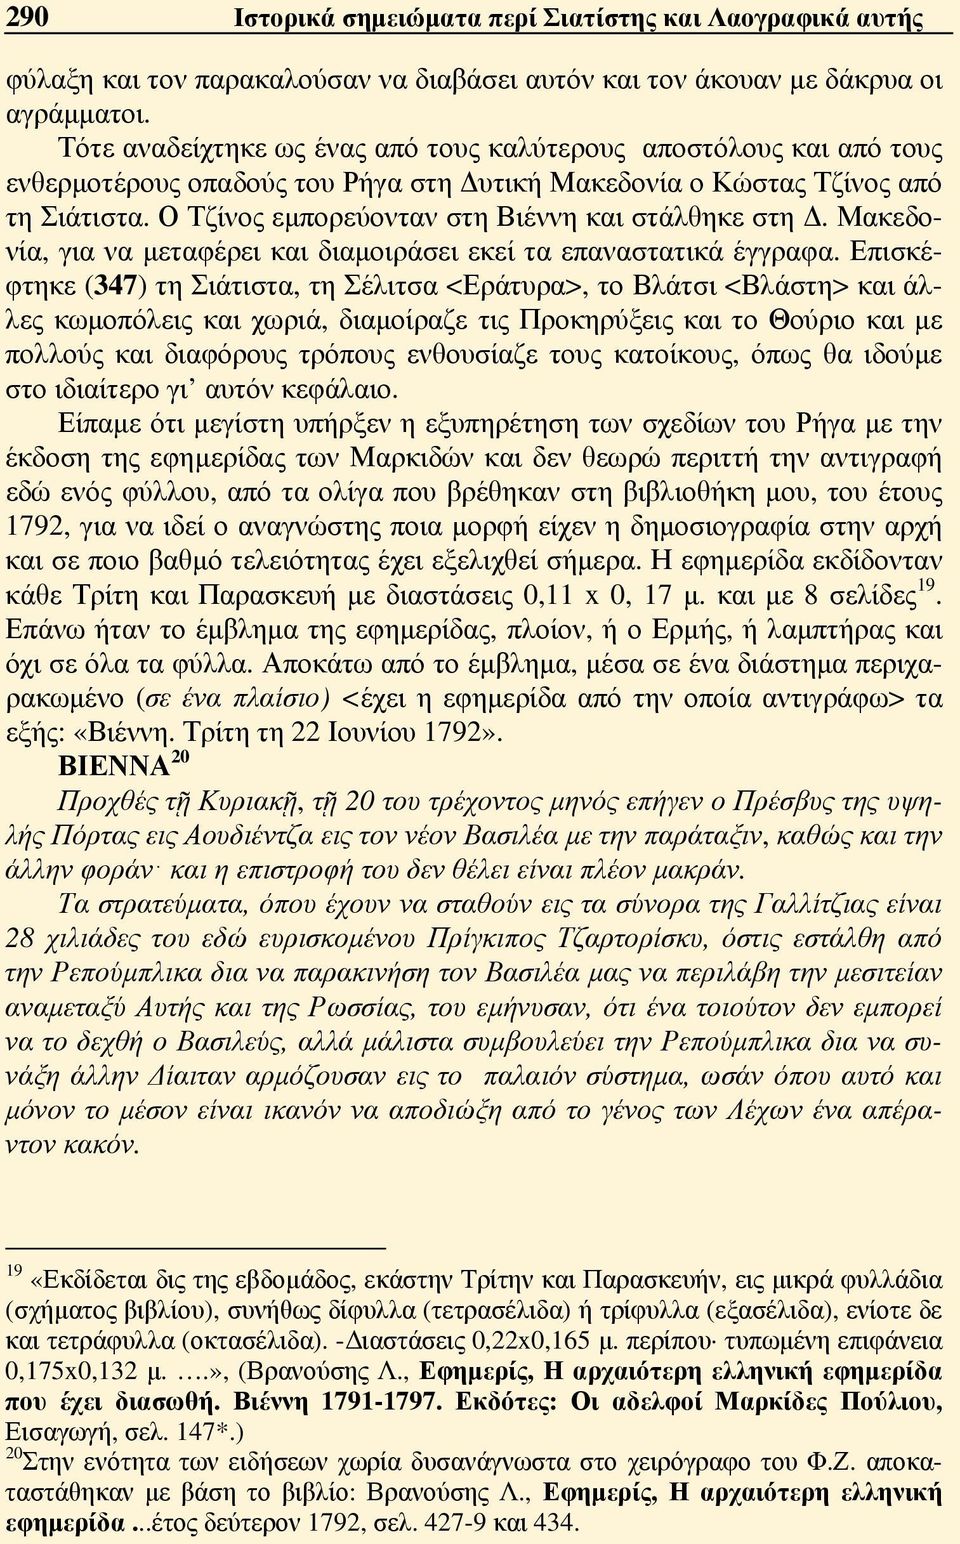 Ο Τζίνος εμπορεύονταν στη Βιέννη και στάλθηκε στη Δ. Μακεδονία, για να μεταφέρει και διαμοιράσει εκεί τα επαναστατικά έγγραφα.